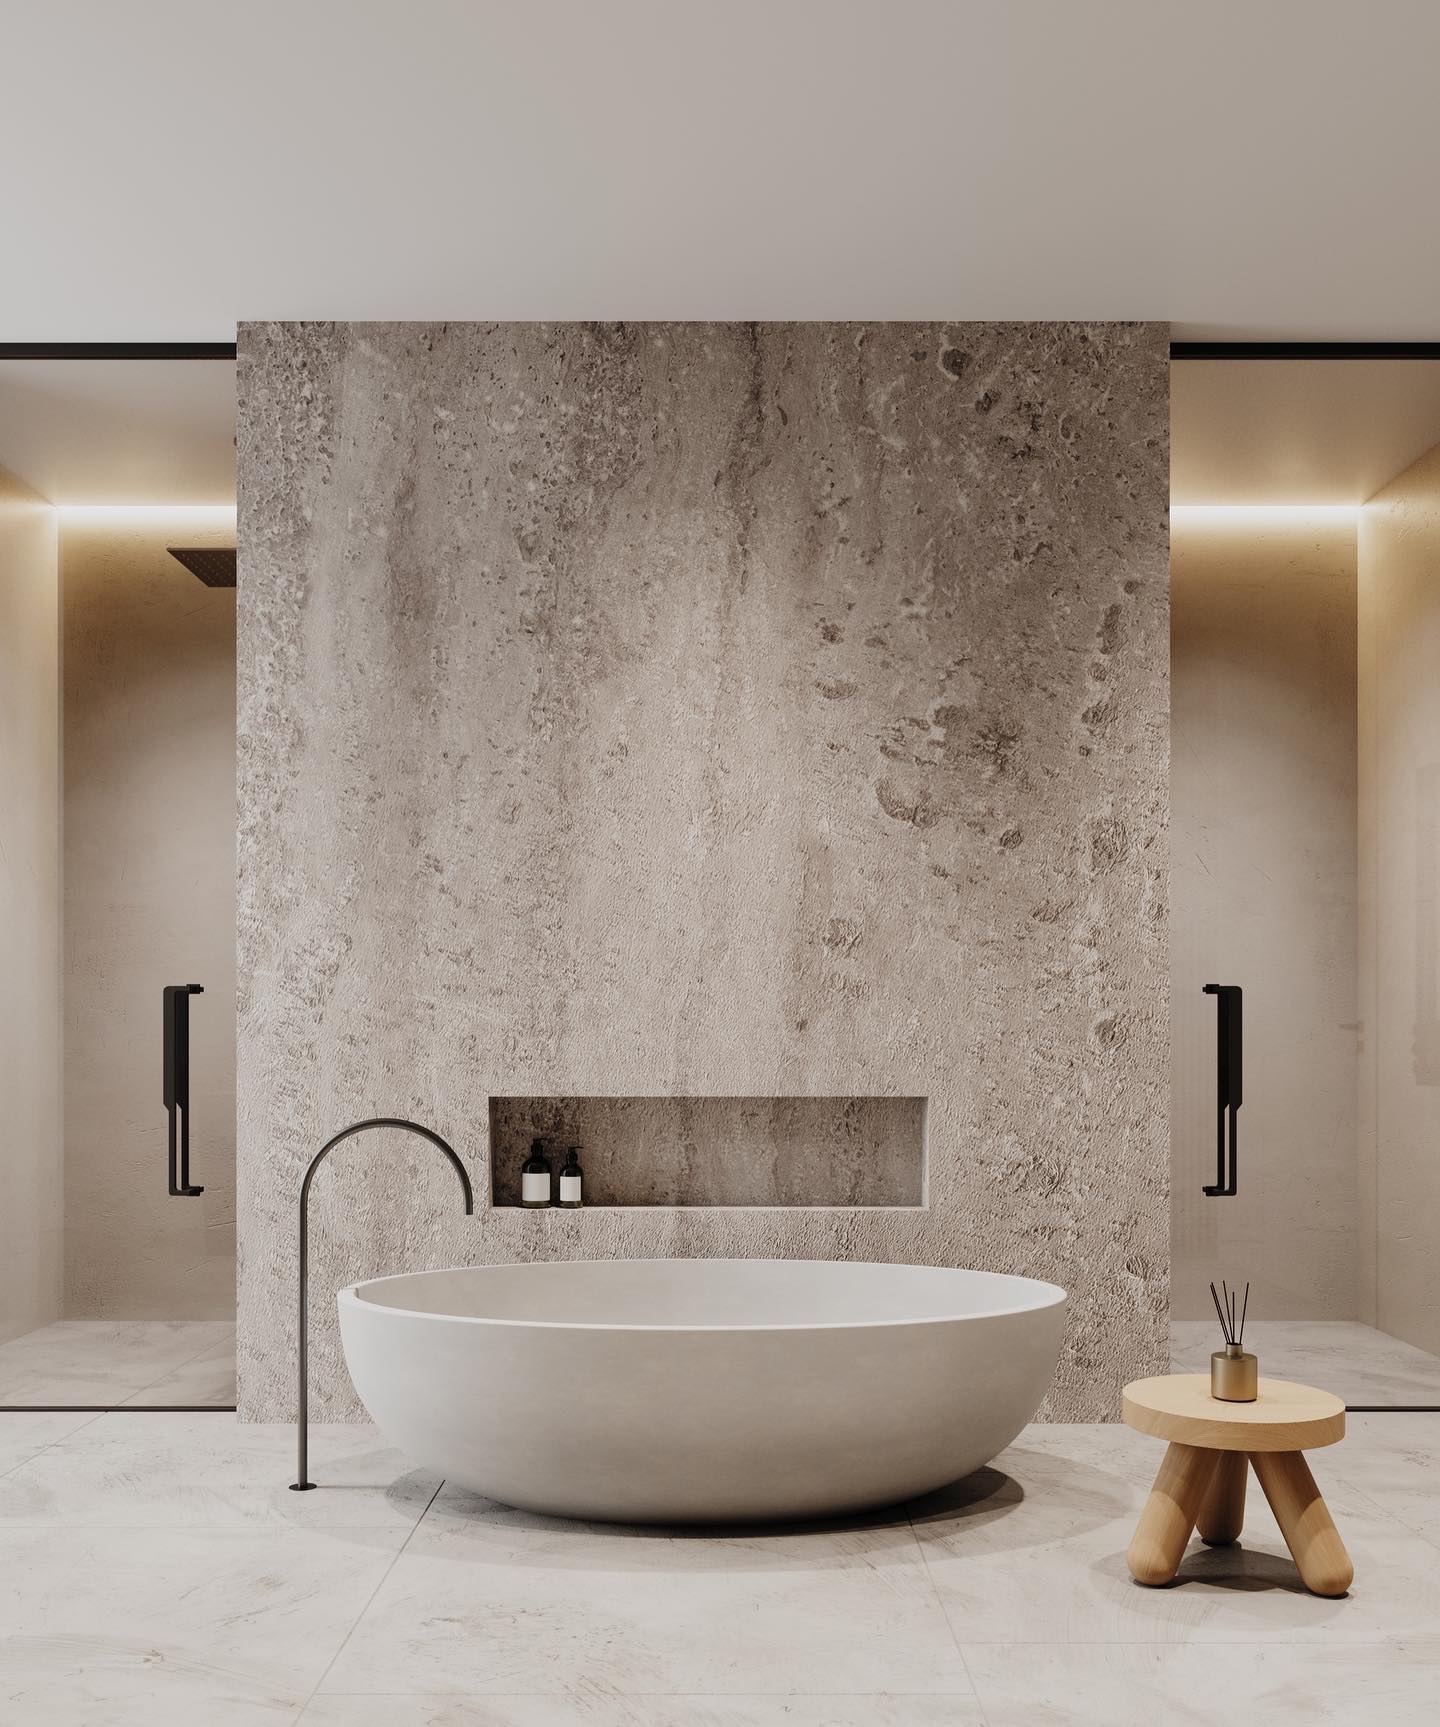 Dit badkamerontwerp is gerealiseerd door Loak Designs, met een prachtig ovaal bad tegen een natuurstenen scheidingswand.